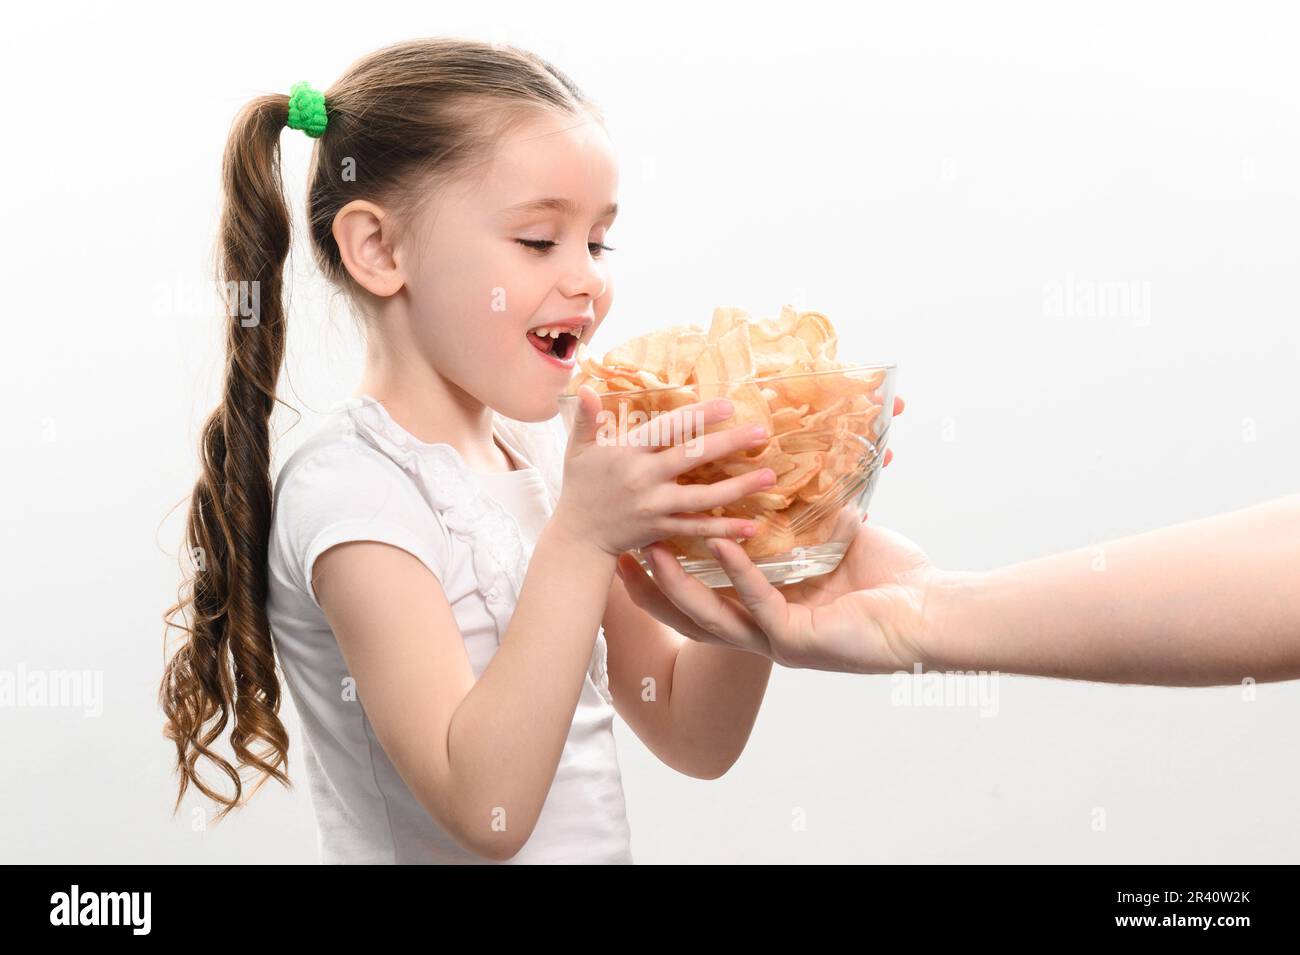 Das kleine Mädchen erhält eine große Schüssel Chips Snacks mit Schmalz, weißes Hintergrundporträt eines kleinen Mädchens, das Chips isst, ein Kind und ungesundes Fast Food. Stockfoto